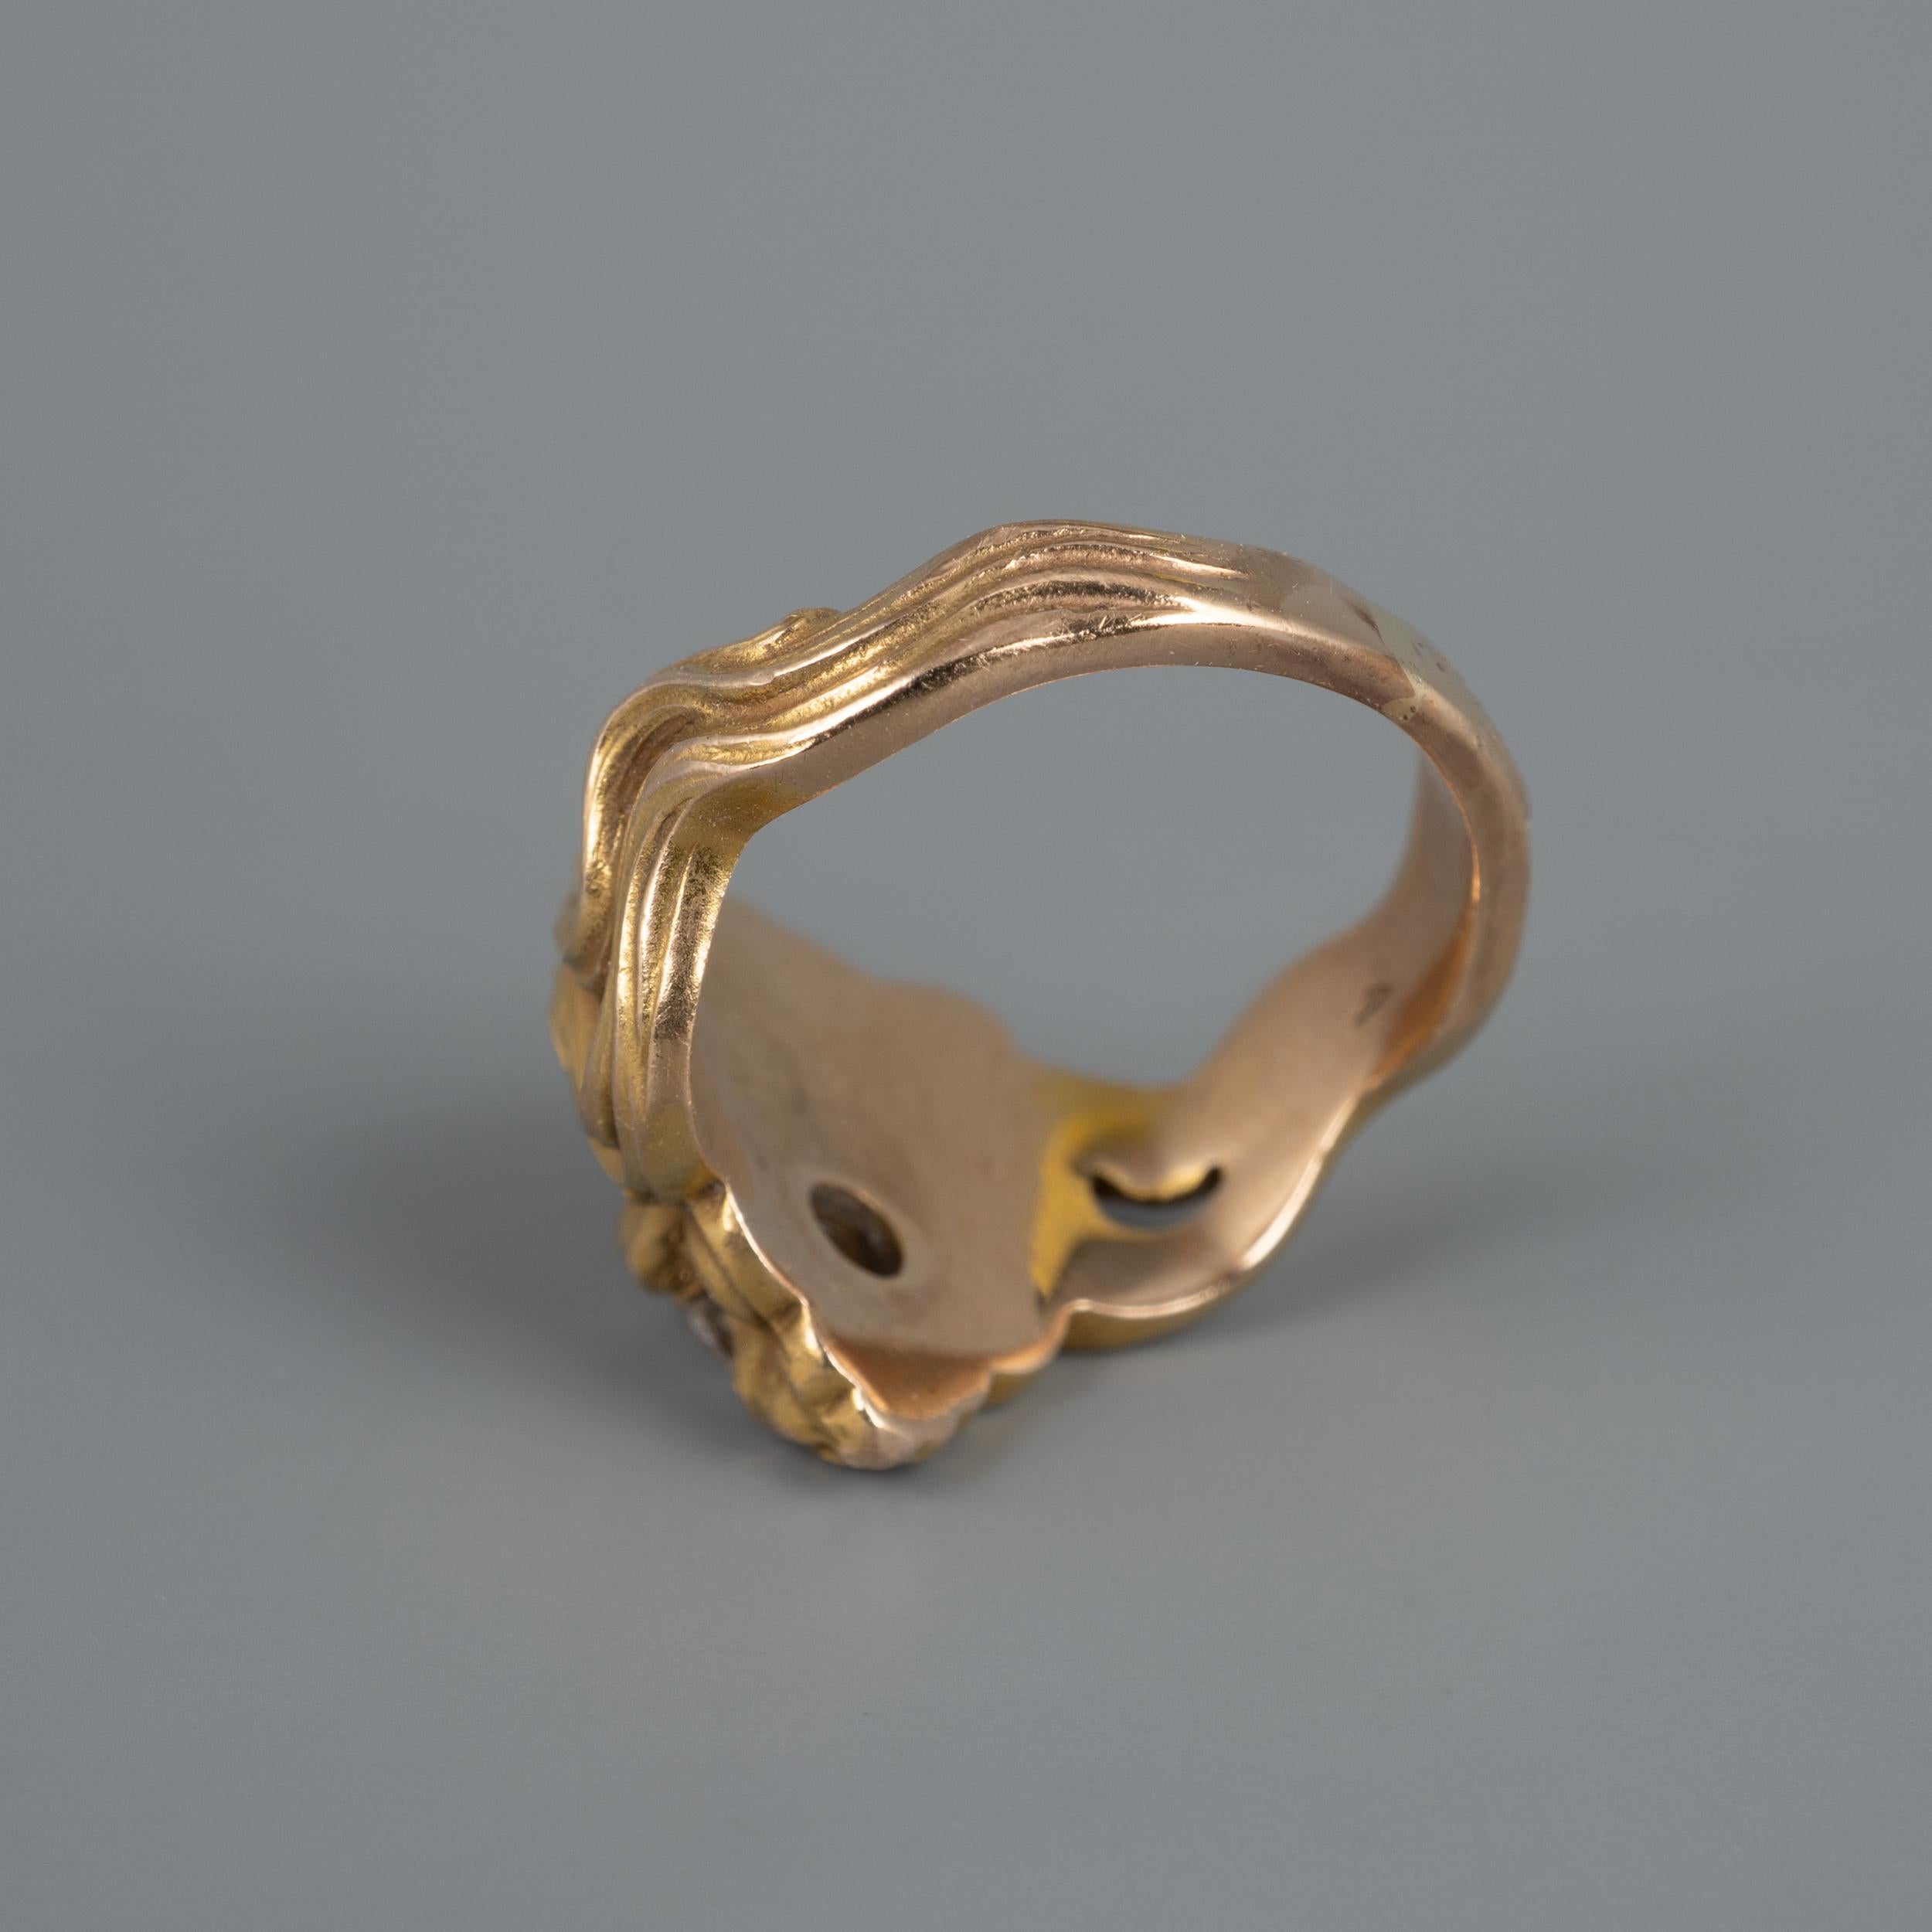 Antique Art Nouveau Rose Cut Diamond Garnets Roaring Lion Ring 1